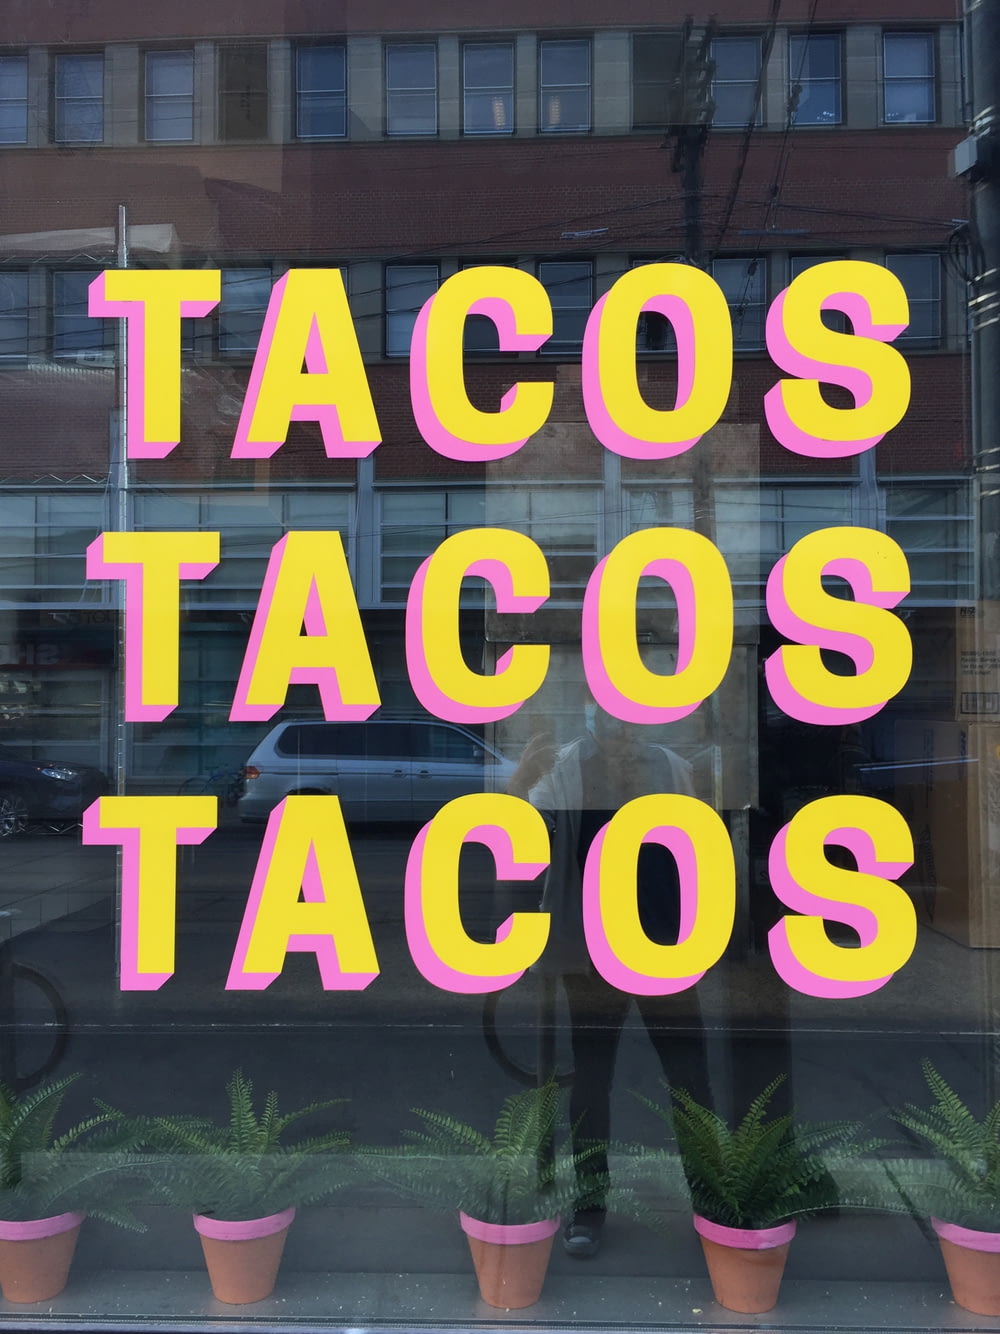 Une fenêtre avec une enseigne qui dit tacos tacos